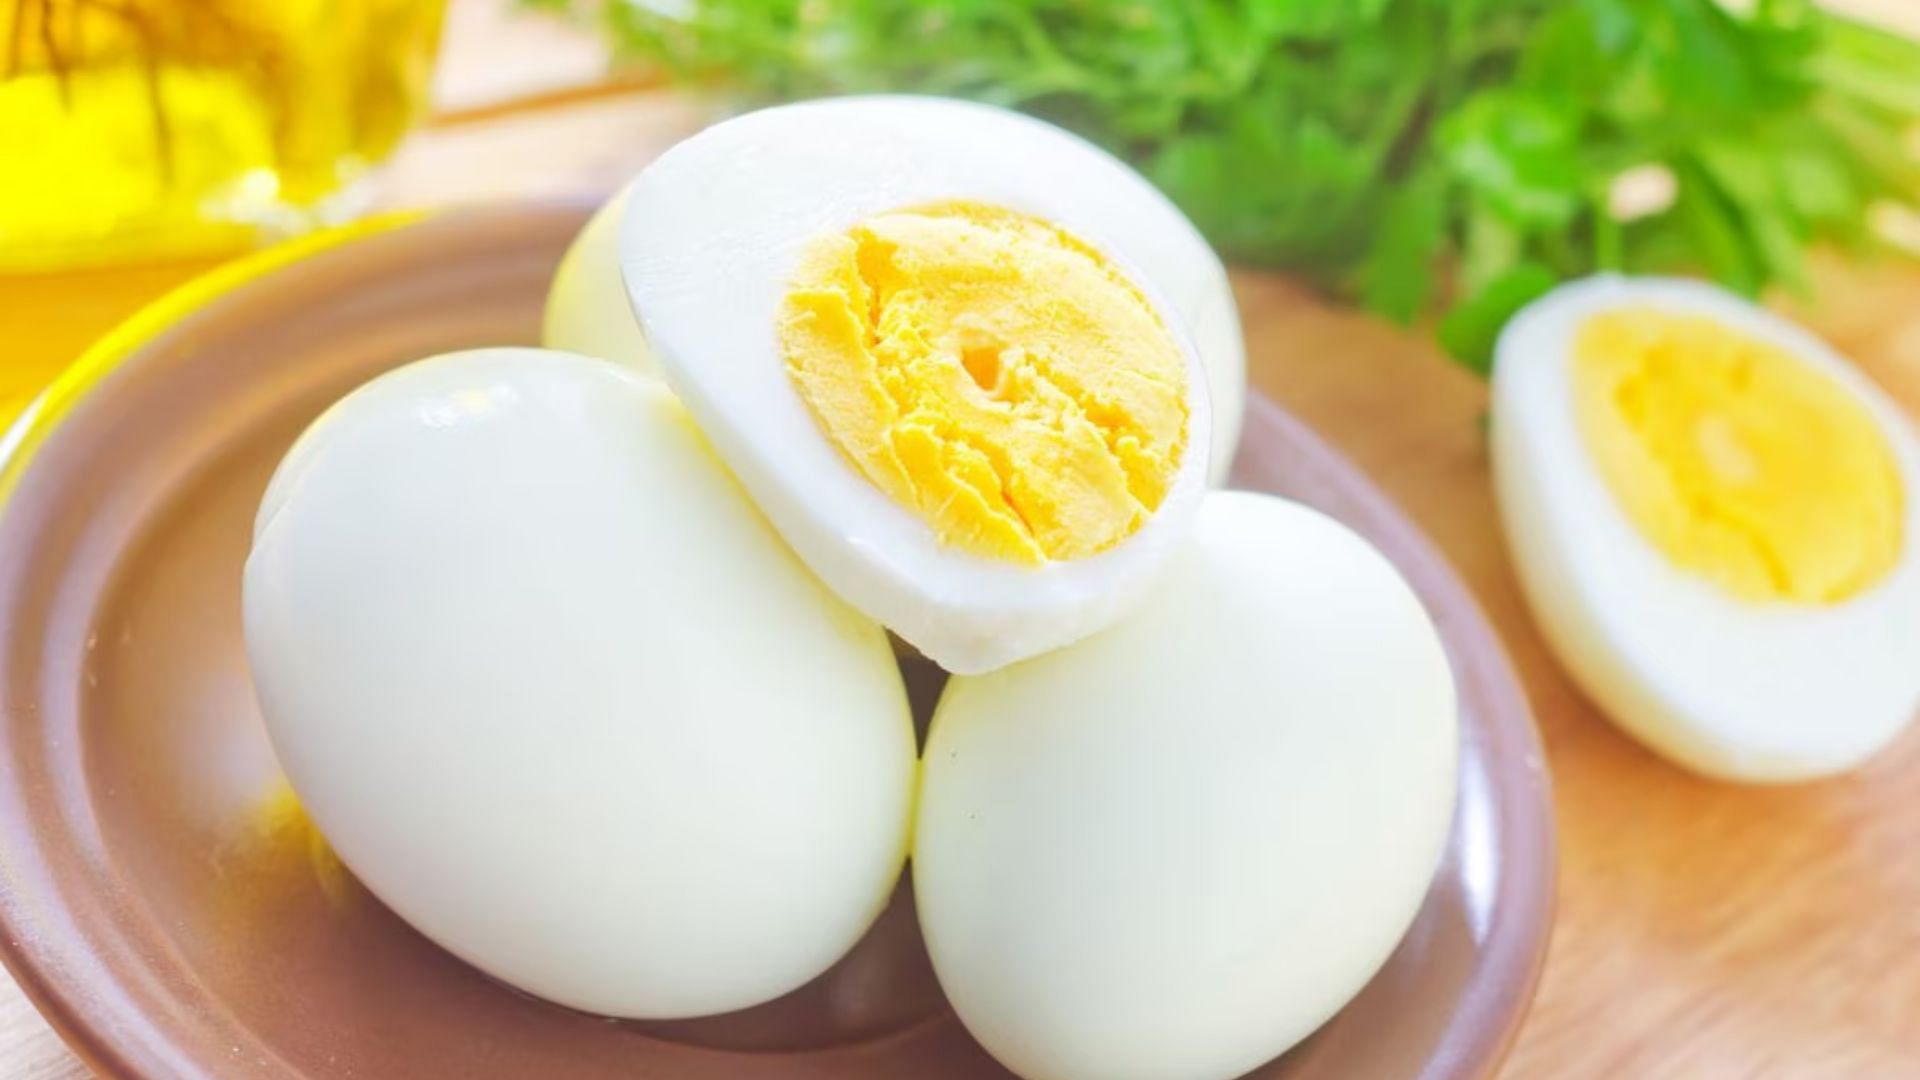 अंडे प्रोटीन, बायोटिन और अमीनो एसिड से होते हैं भरपूर!